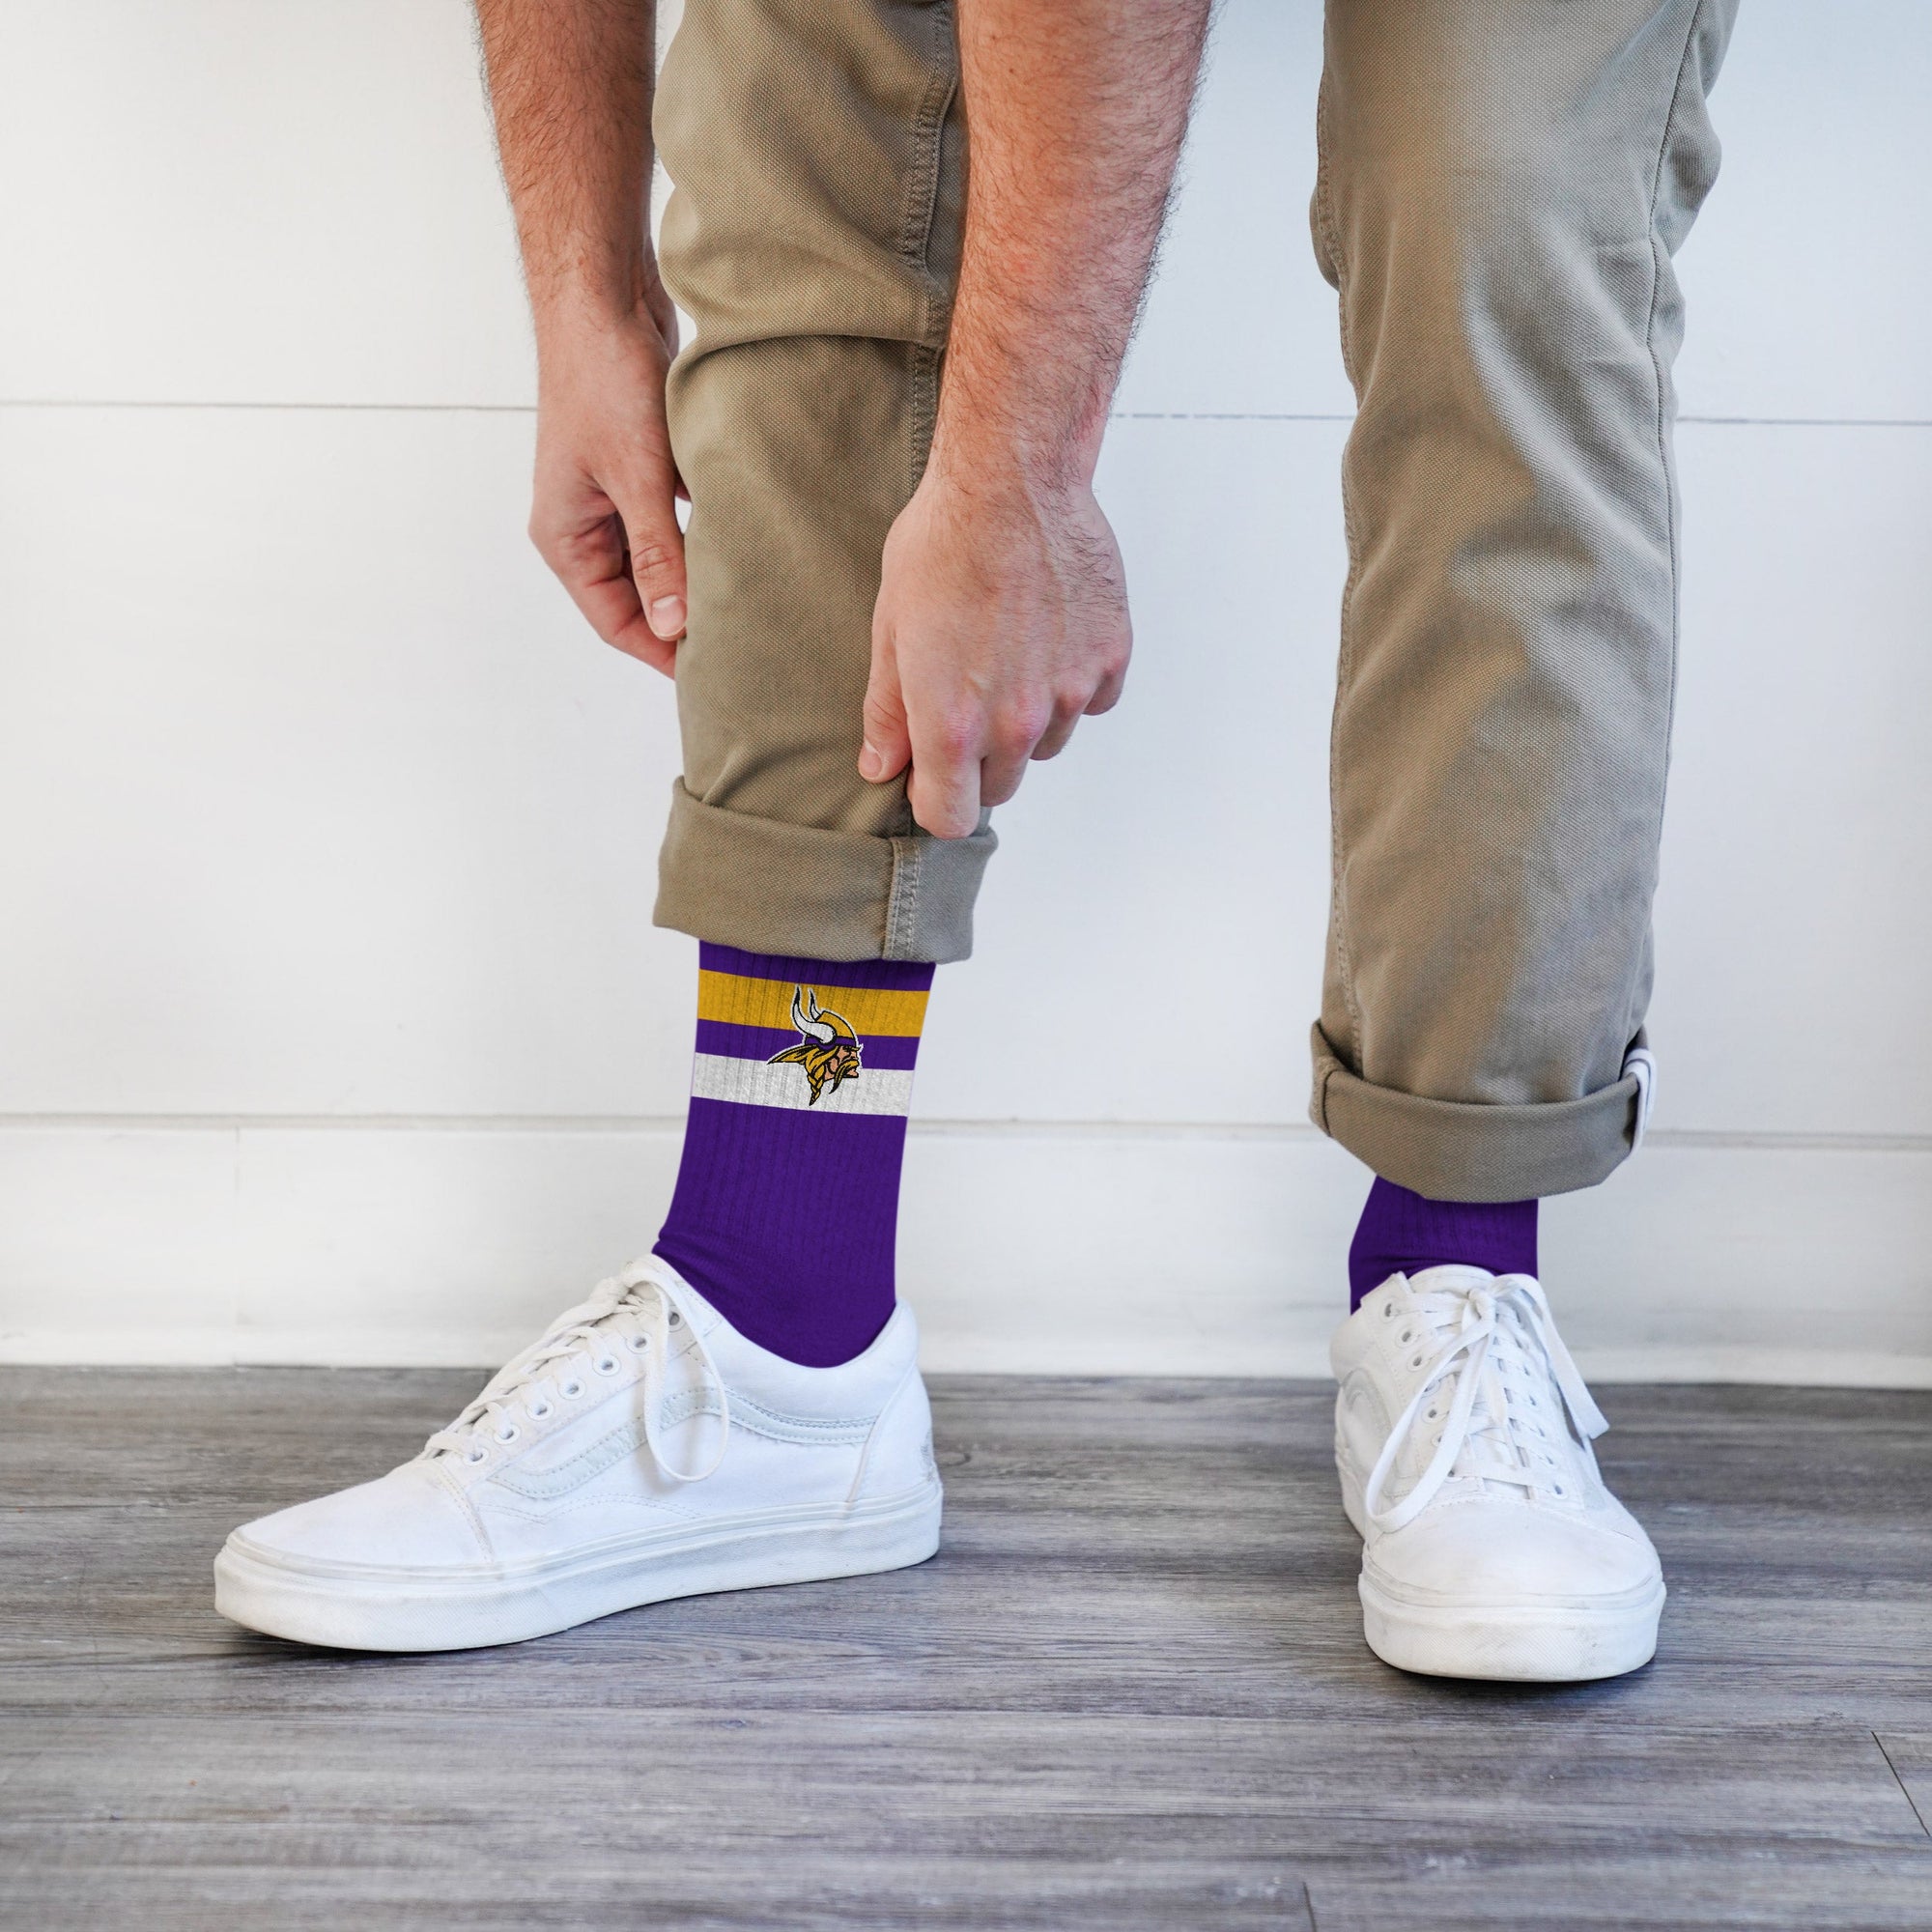 Minnesota Vikings - Legend Premium Crew Socks